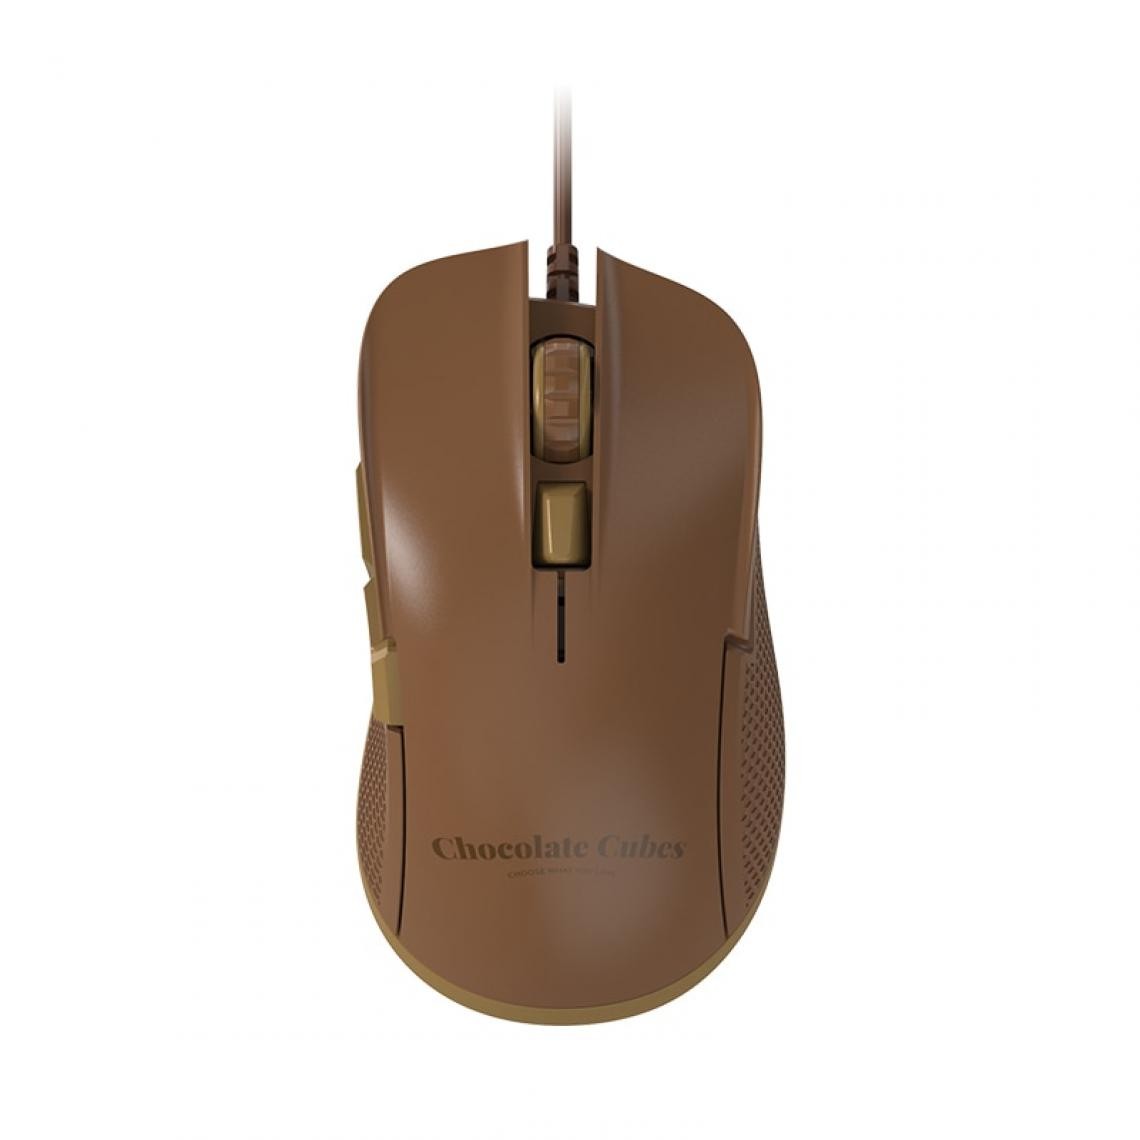 Universal - Chocolate Mouse 12400dpi Pro Gaming Mouse pour ordinateur portable Ensemble d'ordinateurs tout en un sur un PC Souris USB filaire Repos | Mouse(brun) - Souris